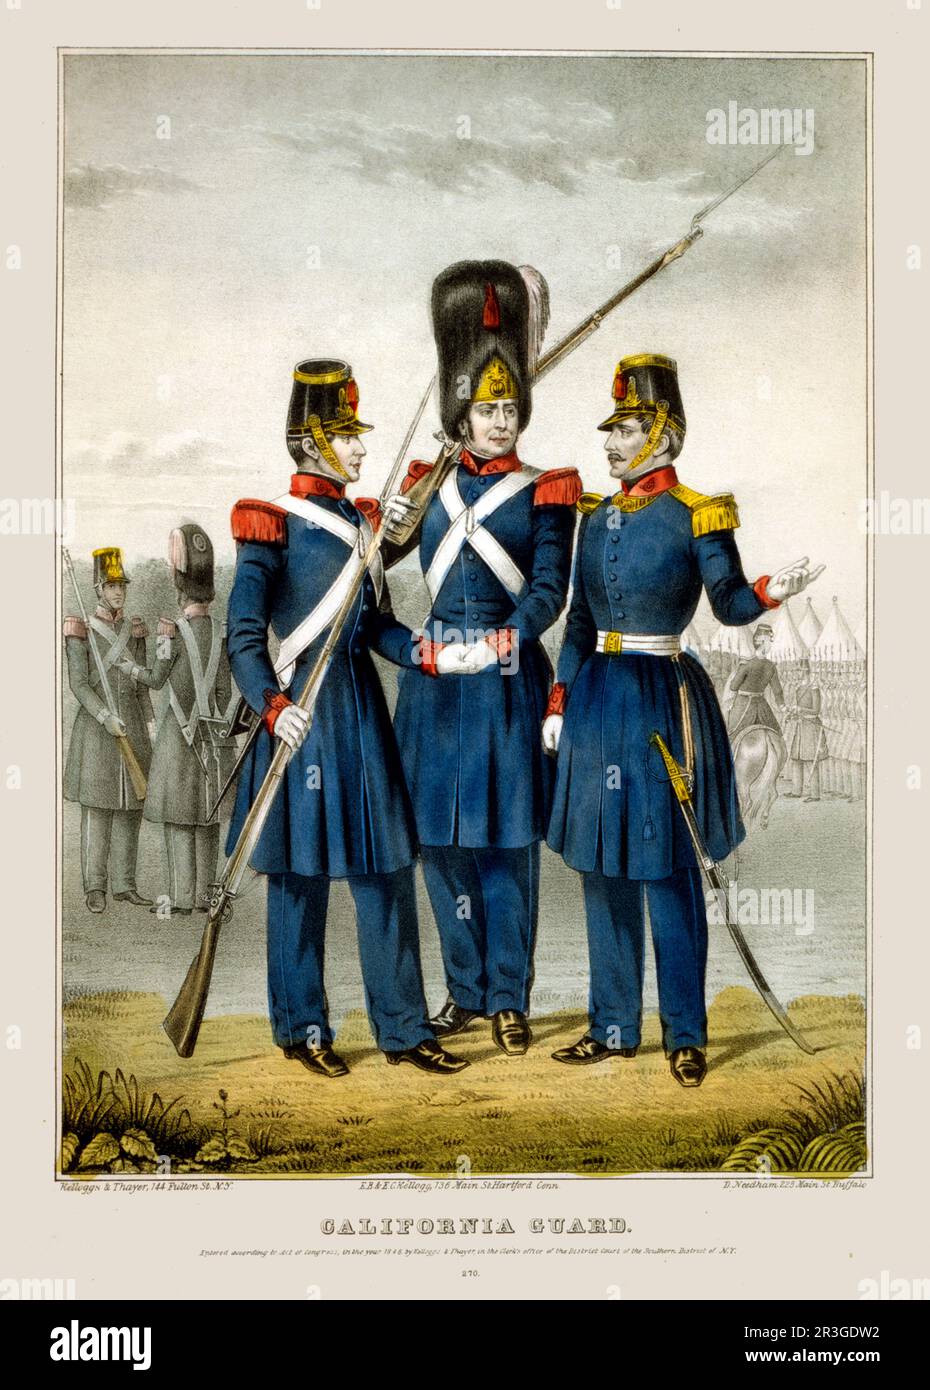 Kalifornische Garde. Männer in Uniform während des Mexikanischen Krieges, 1846-1848. Stockfoto